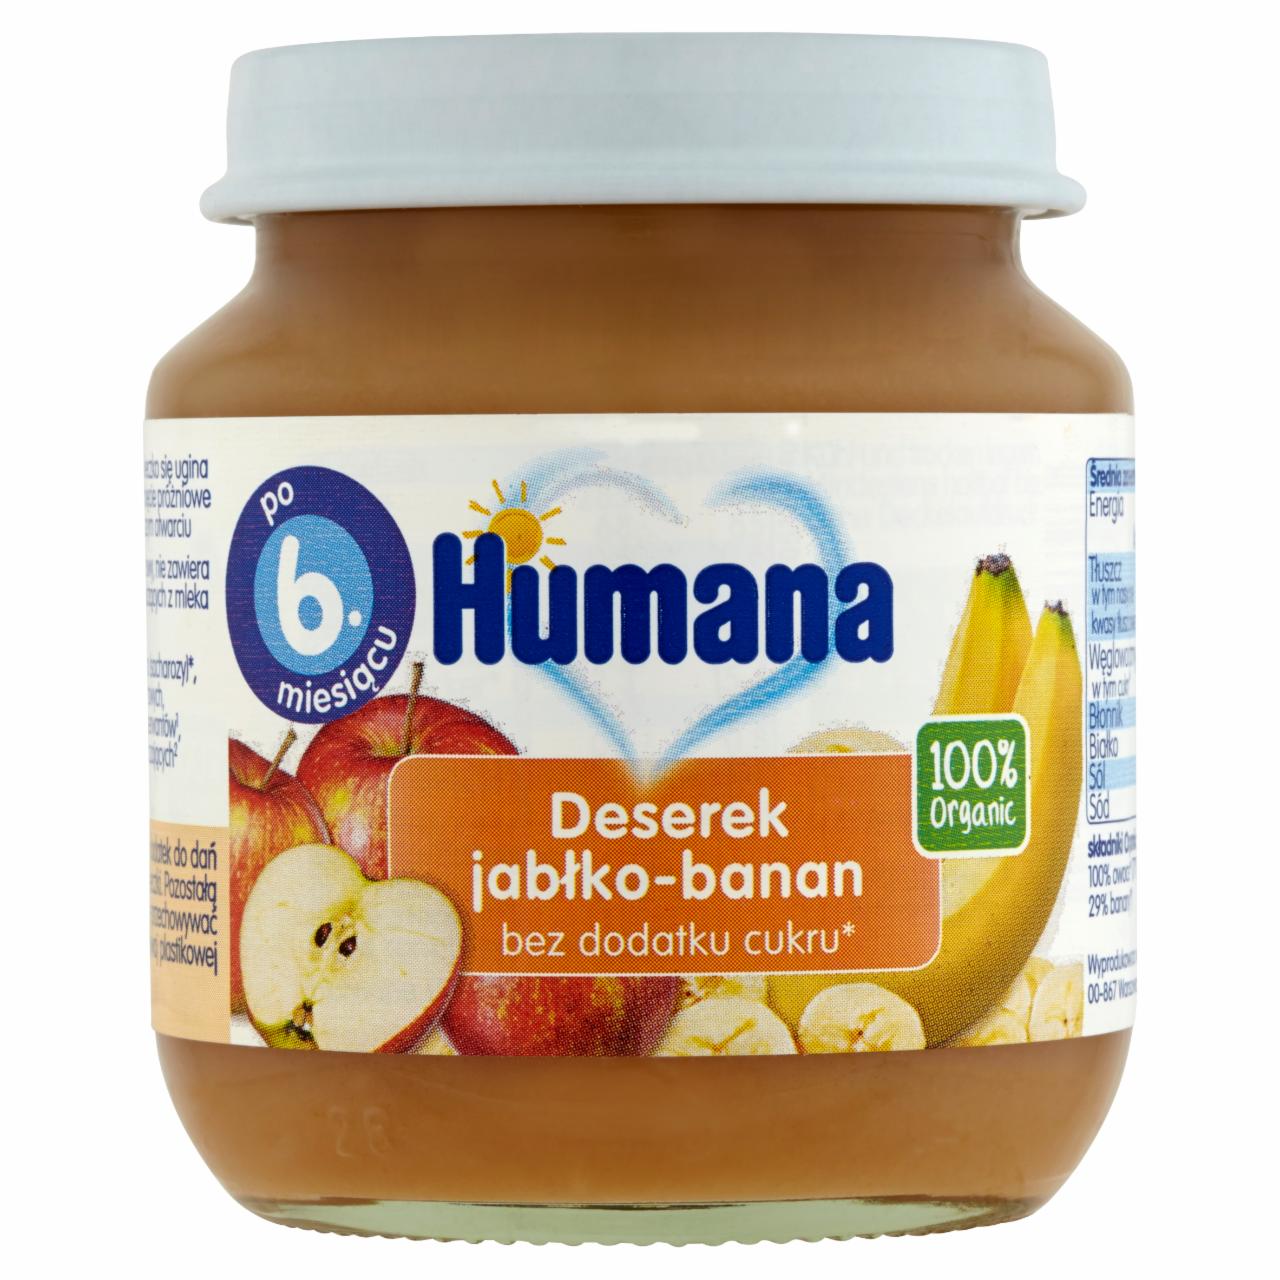 Zdjęcia - Humana 100% Organic Deserek jabłko-banan po 6. miesiącu 125 g